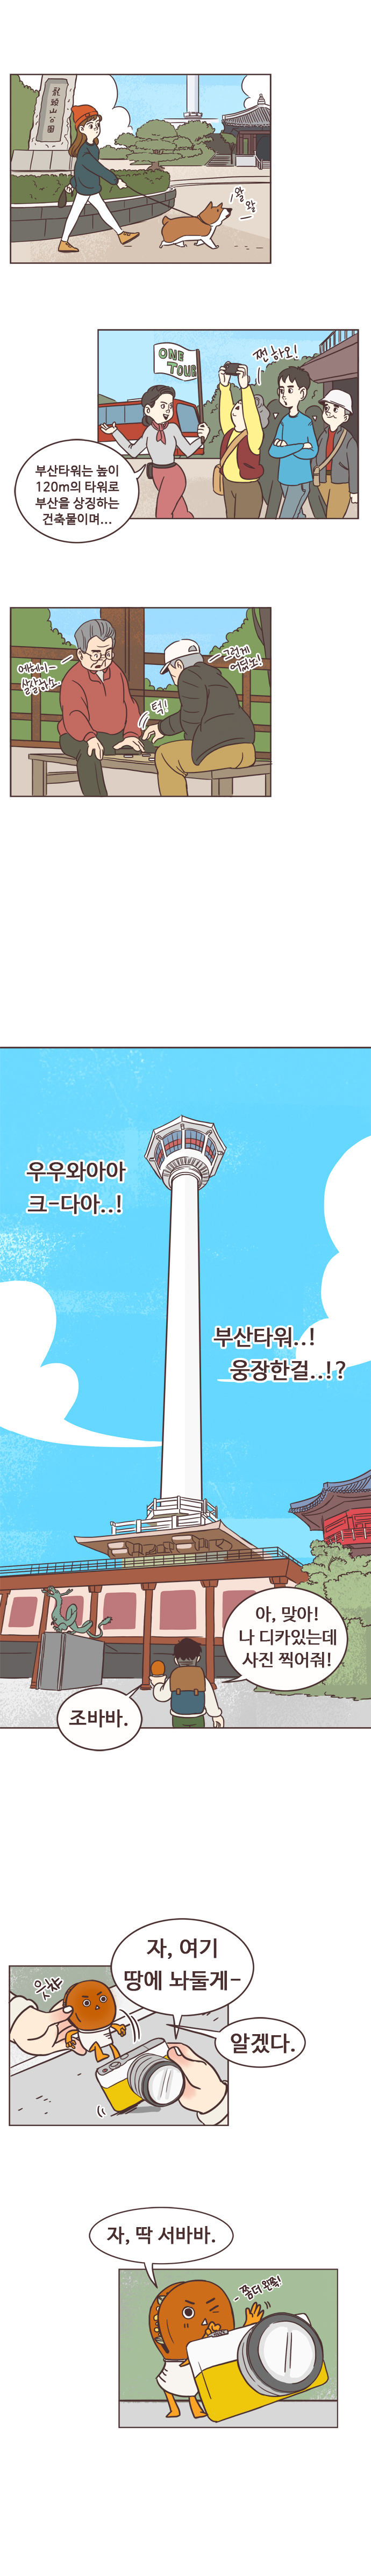 (왈왈-지나가는 강아지)
                관광가이드 : 부산타워는 높이 120m의 타워로 부산을 상징하는 건축물이며... 
                관광객 : 쩐하오! 
                
                바둑두는 할아버지들
                할아버지1 : 에헤이- 살살하소. 
                할아버지2 : 턱! -그런게 어딨노! 
                
                서울남 : 우우와아아 크-다아..! 부산타워..! 웅장한걸..!? 아, 맞아! 나 디카있는데 사진 찍어줘! 
                호떡 : 조바바. 
                서울남 : 자, 여기 땅에 놔둘게- 
                호떡 : 알겠다. 자, 딱 서바바. -쫌더 왼쪽!